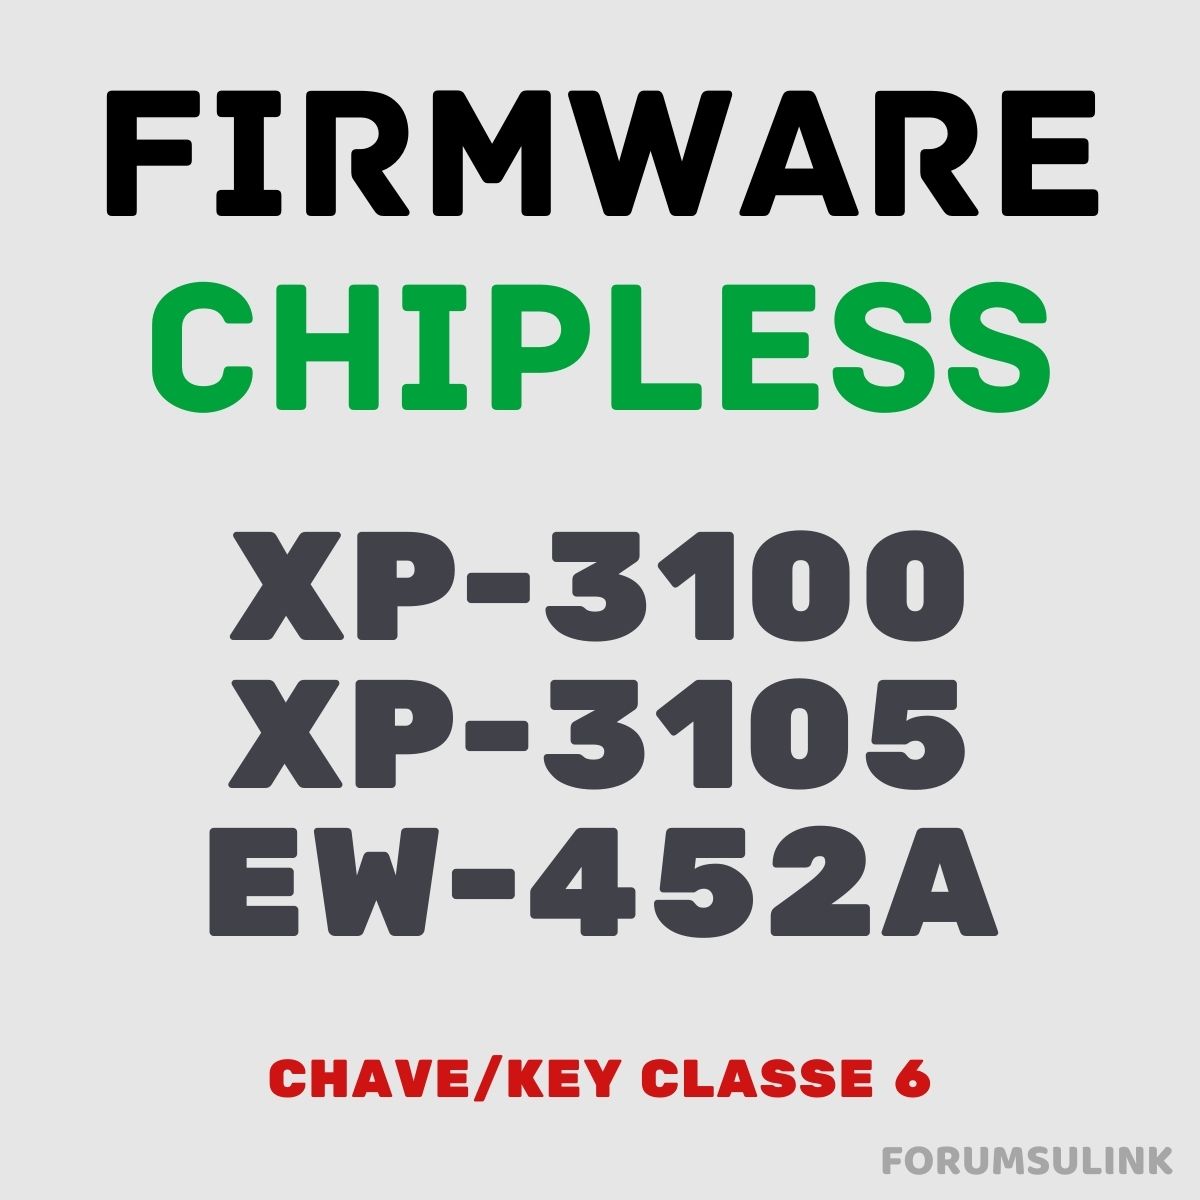 Epson XP-3100, XP-3105 e EW-452A | Arquivo de Software Firmware ChipLess